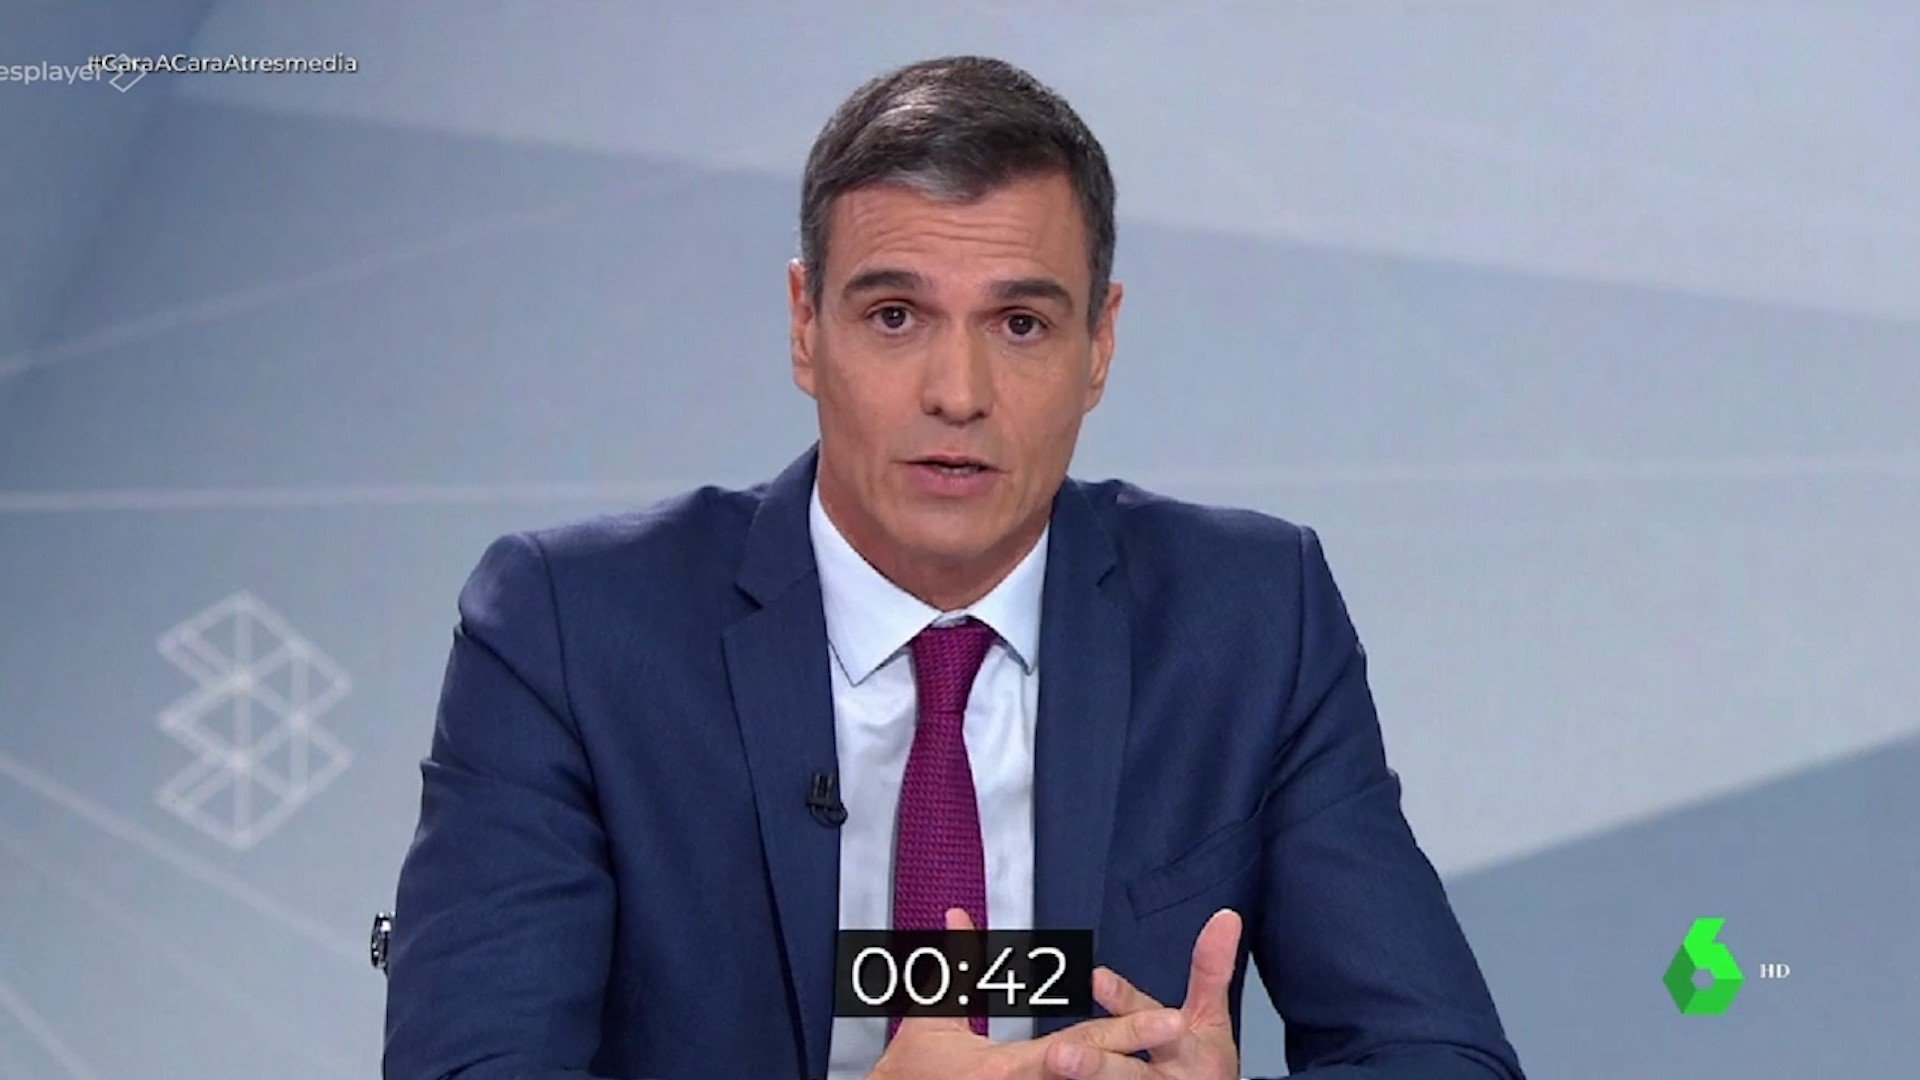 Minut d'or de Pedro Sánchez | VÍDEO: Així demana el vot al debat electoral amb Feijóo